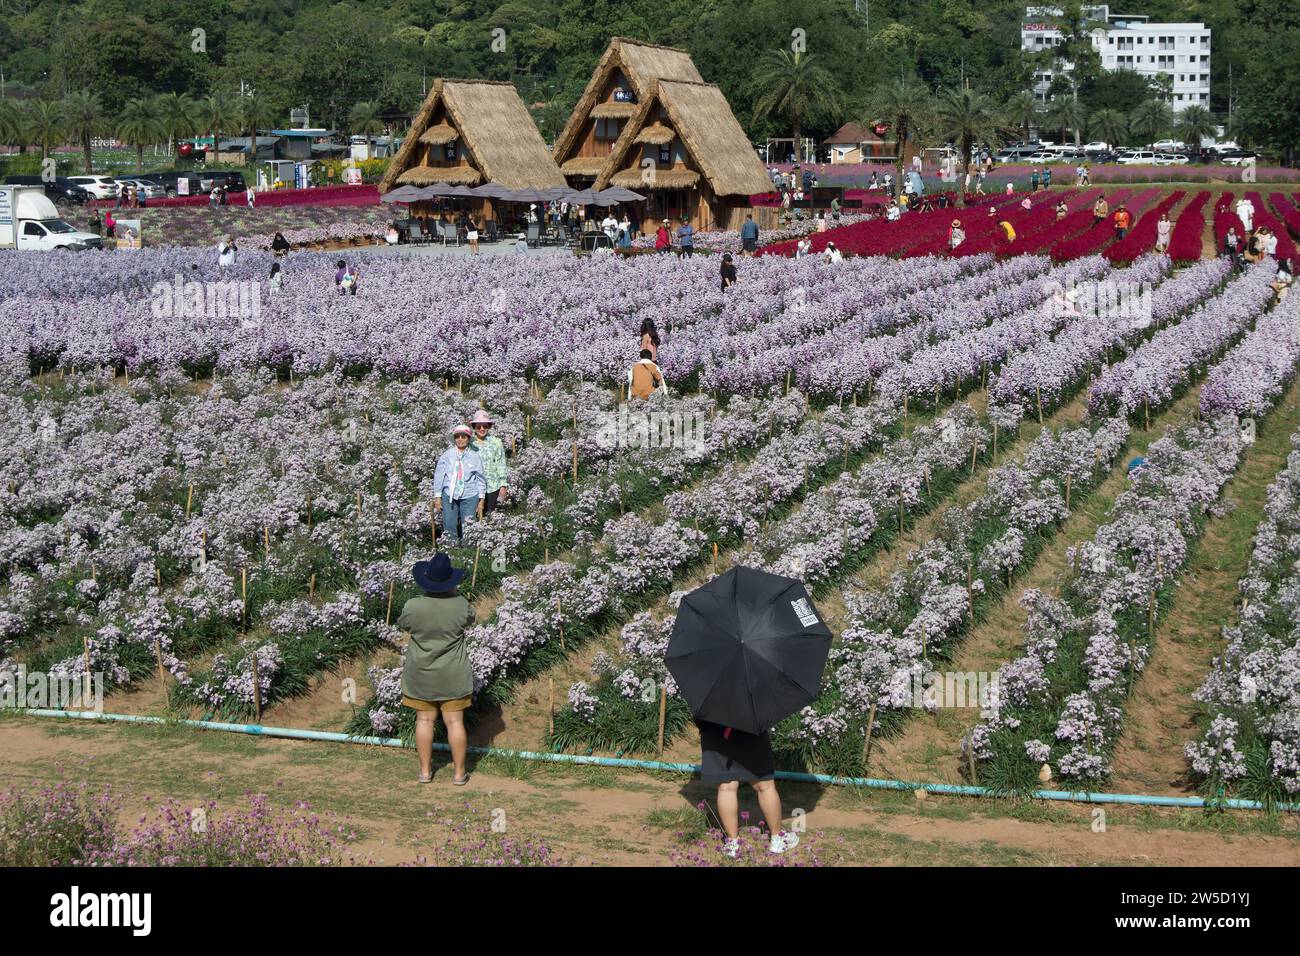 Im hokkaido Blumenpark, khao yai, thailand, spazieren Besucher durch die Ausstellungen, einige machen Fotos und andere mit Regenschirmen zum Schutz vor der Sonne Stockfoto